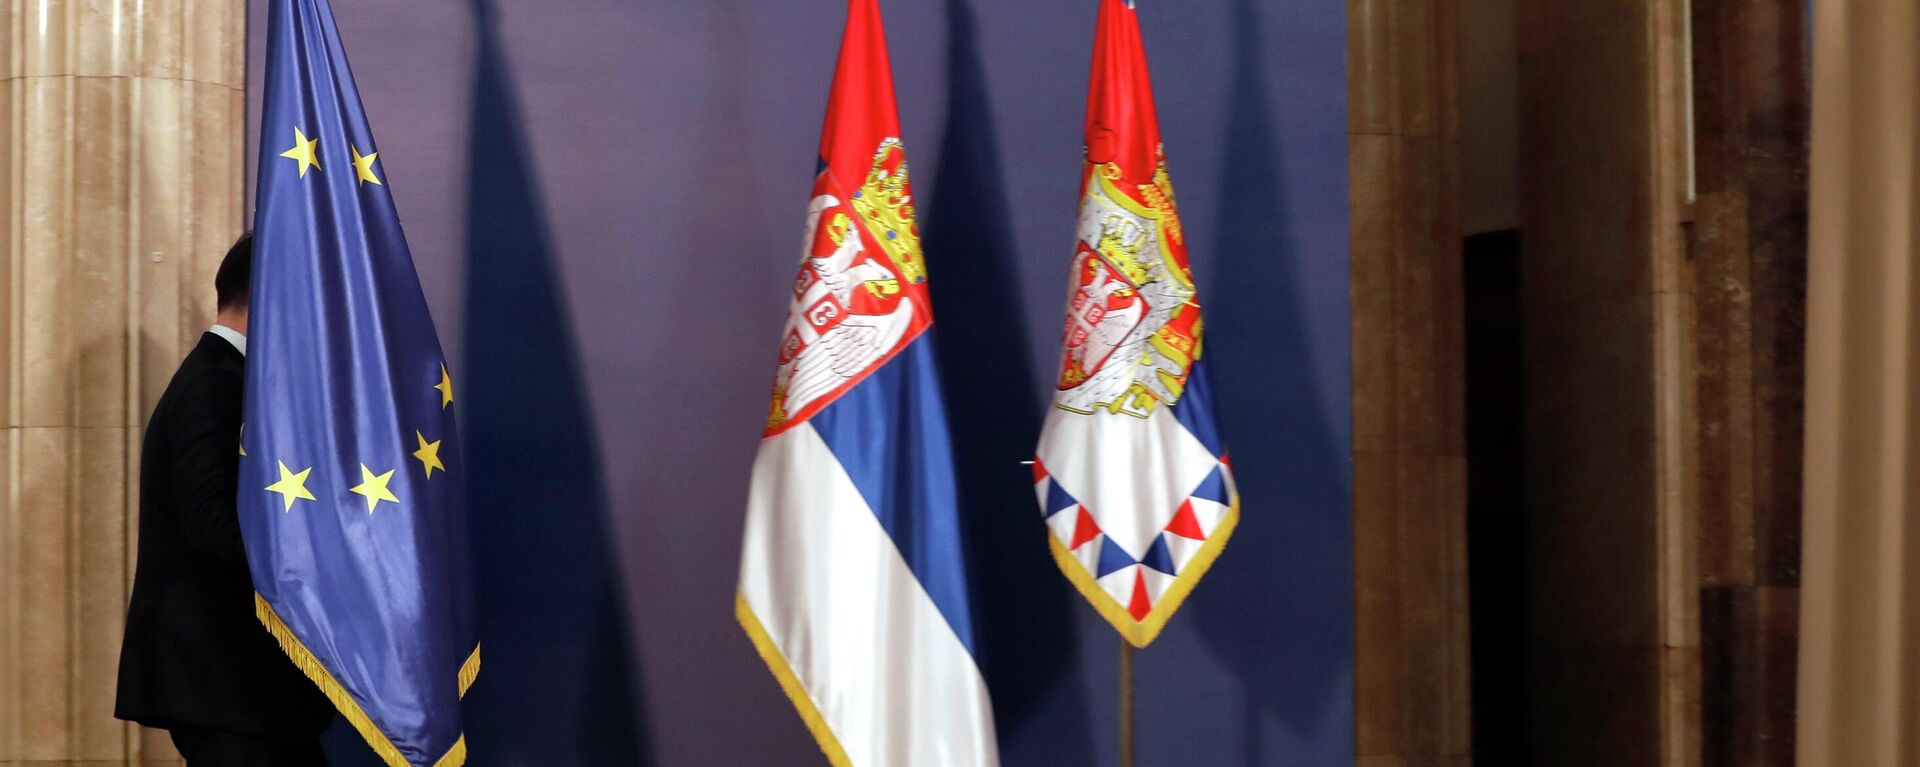 Zastave EU i Srbije - Sputnik Srbija, 1920, 25.09.2022